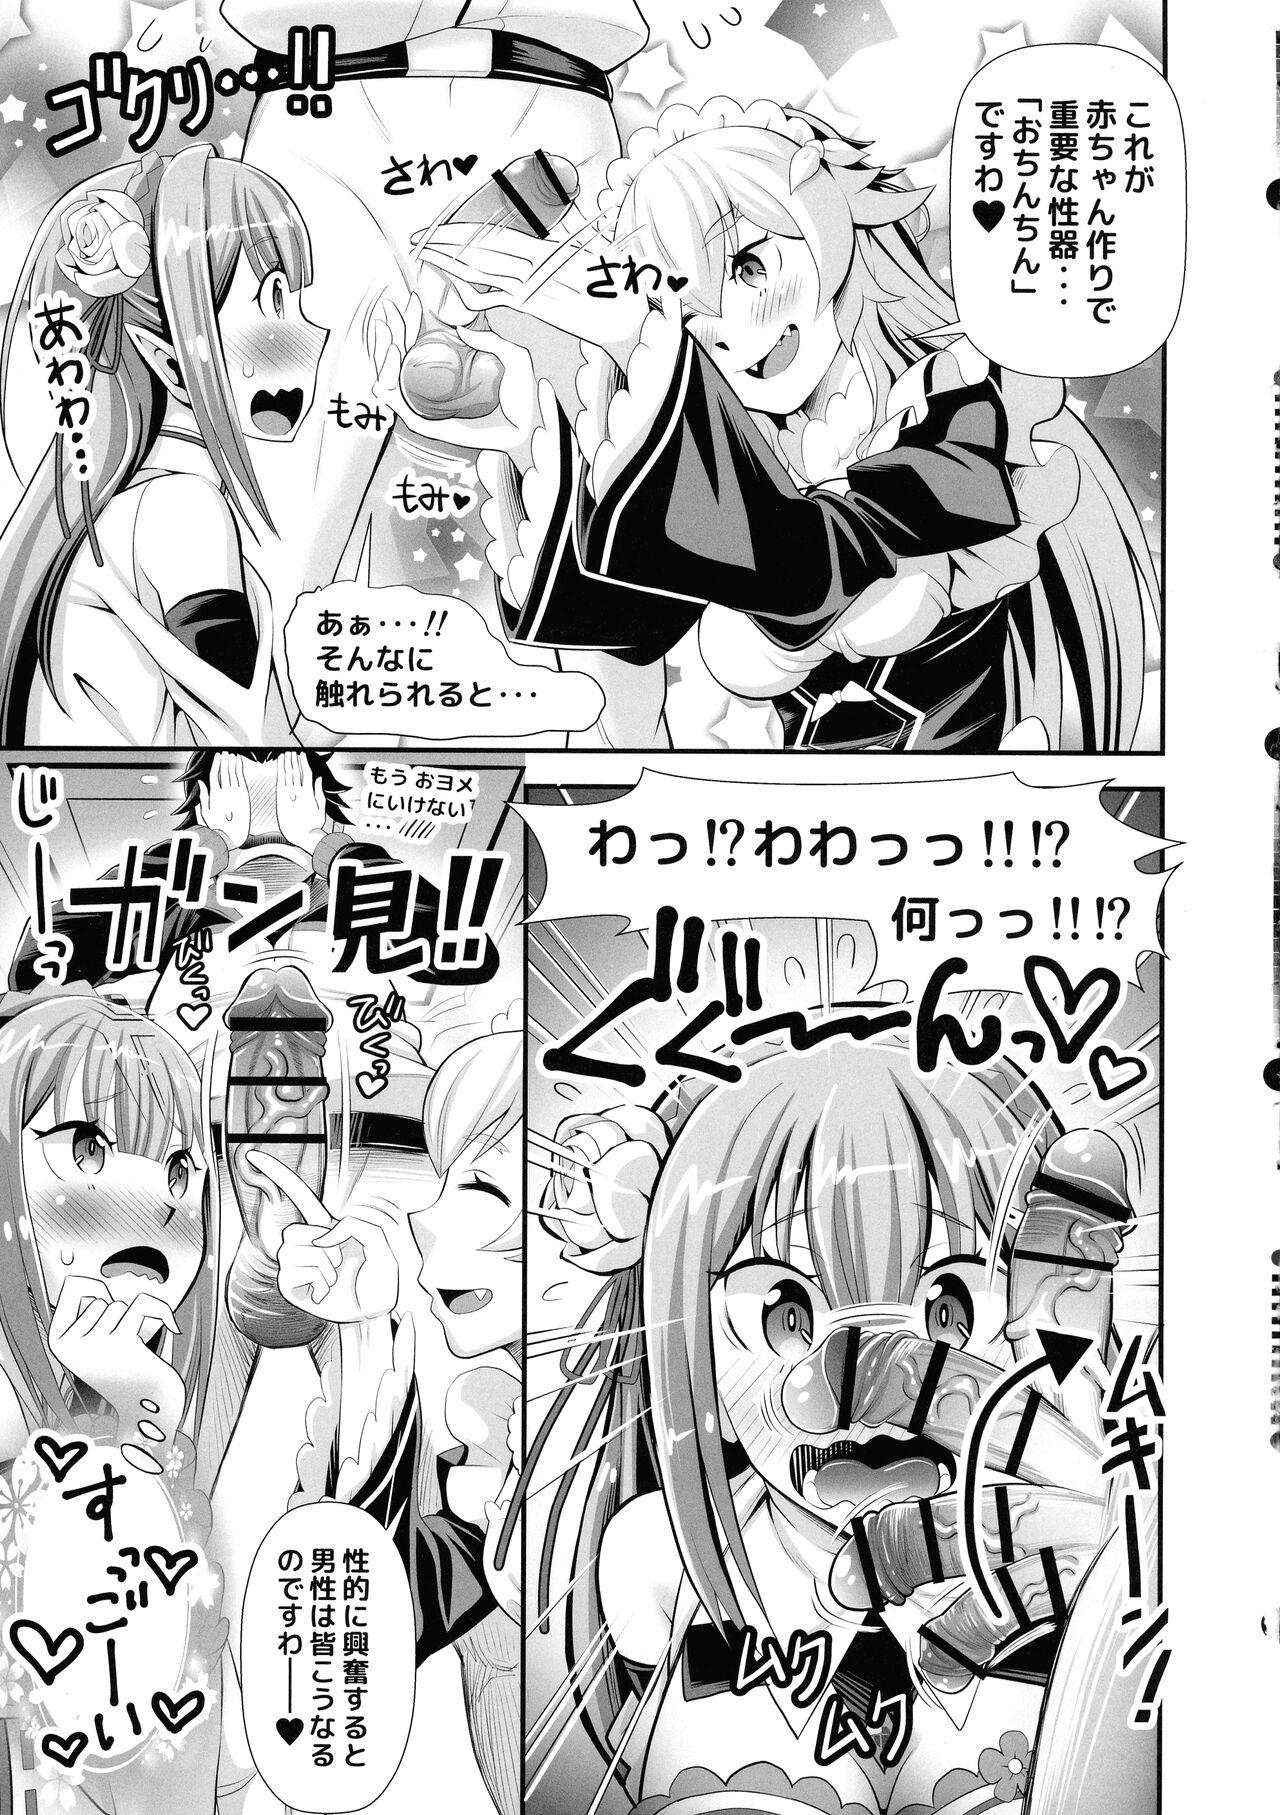 Femdom Porn Re: Zero na Maid-san vol. 3 - Re zero kara hajimeru isekai seikatsu Tight Pussy Porn - Page 7